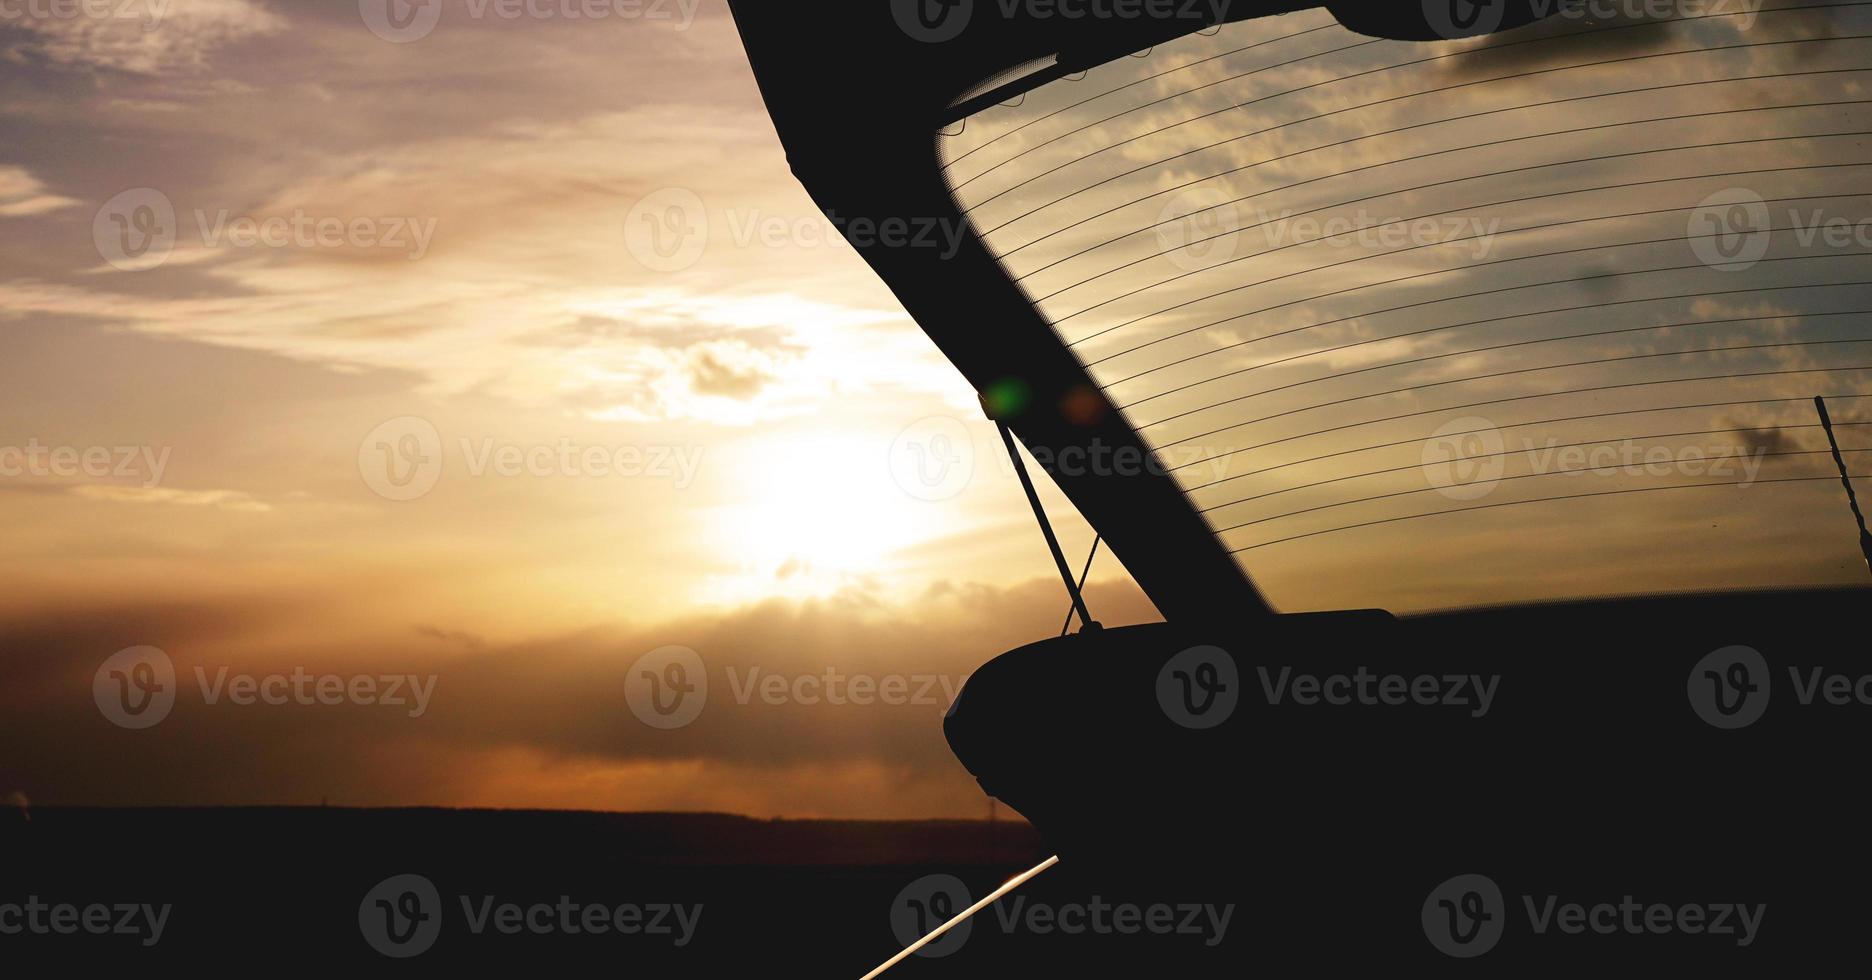 buitenkofferbak bij zonsondergang, foto tegen de zon